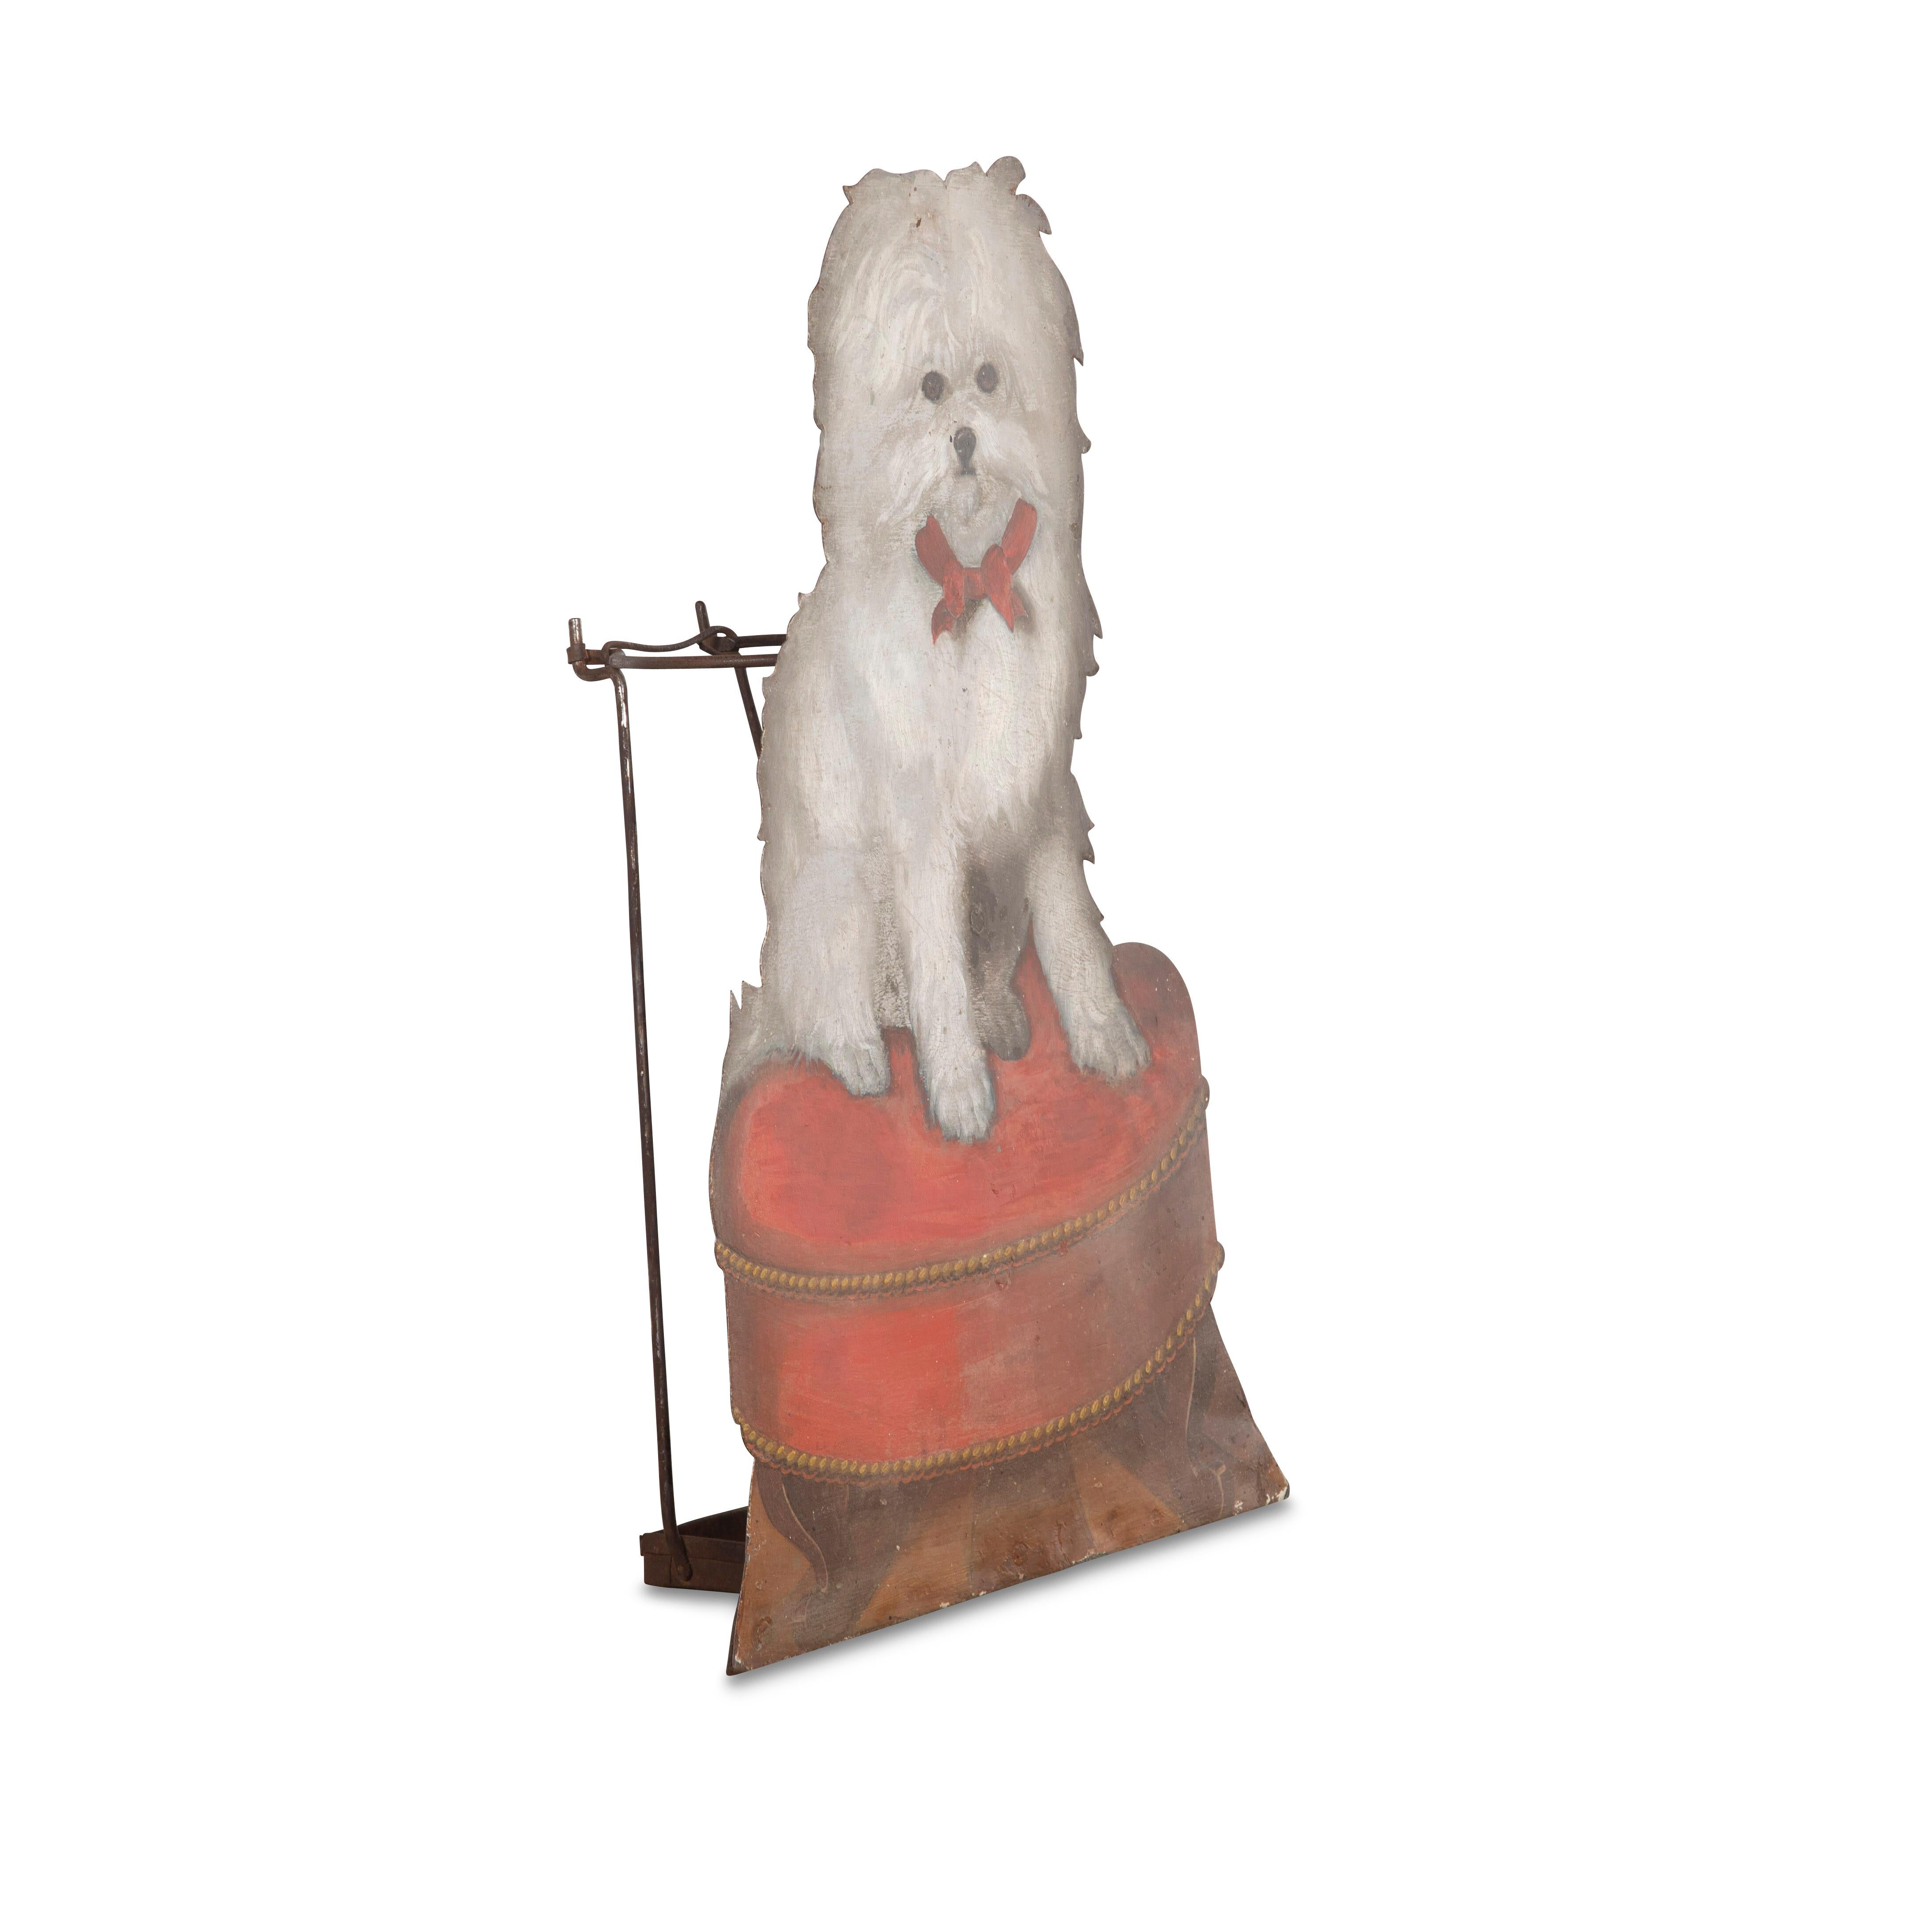 Ein seltenes, dekoriertes Brett aus dem 19. Jahrhundert, das als Ständer konstruiert ist und einen Terrier mit rotem Bandkragen darstellt, der auf einem roten Samtkissenhocker mit kleinen Cabriole-Beinen und einem Parkettboden darunter sitzt. Ein